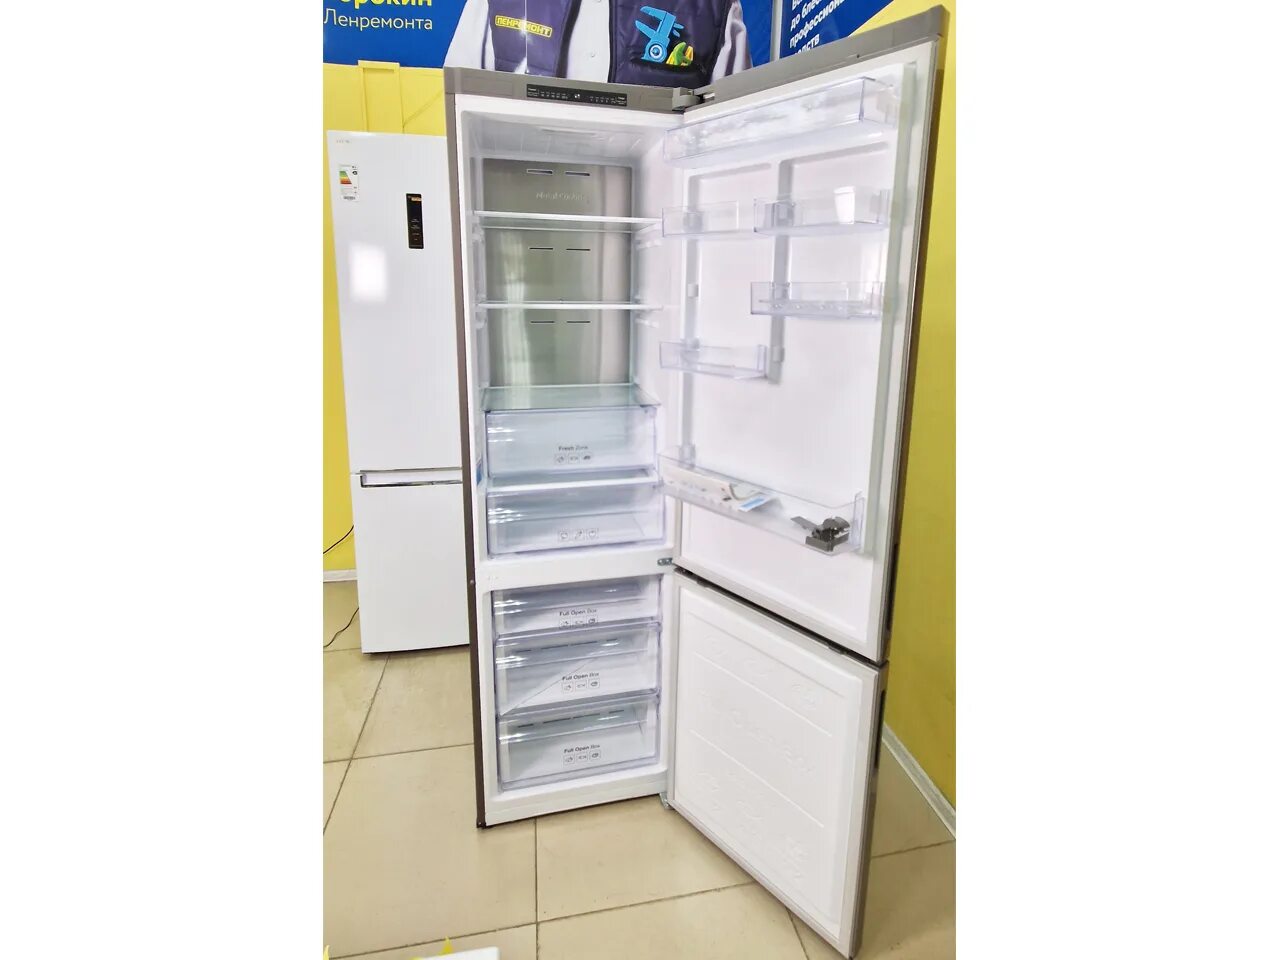 Холодильник современный самый дешевый. Недорогие холодильники в СПБ. Подольск холодильник дешевые. ВТБ холодильники недорого. Купить холодильник в подольске